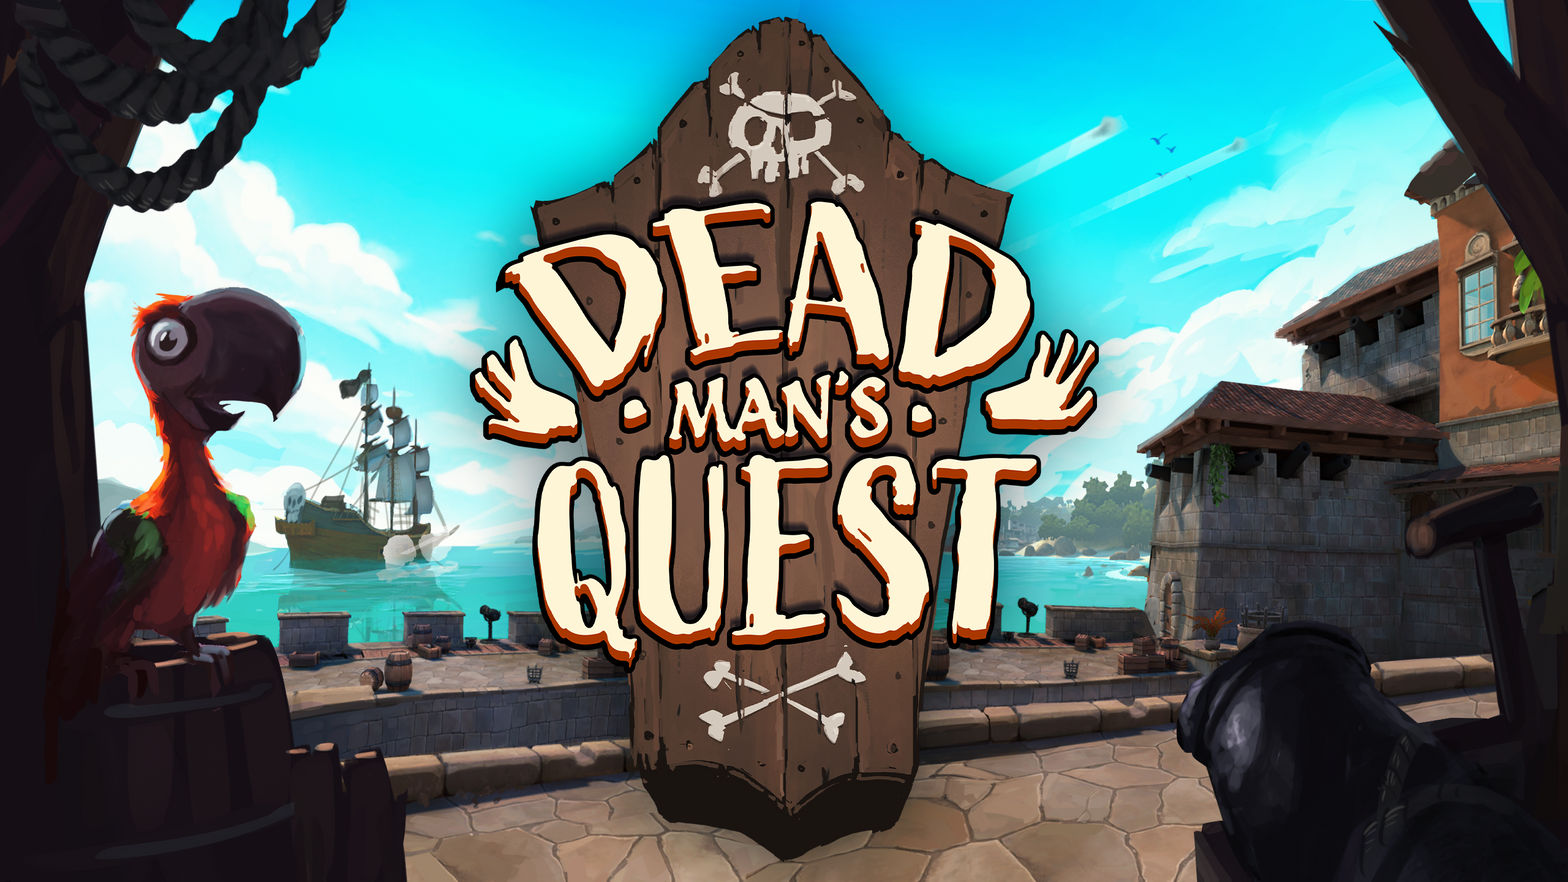 Dead Man's Quest